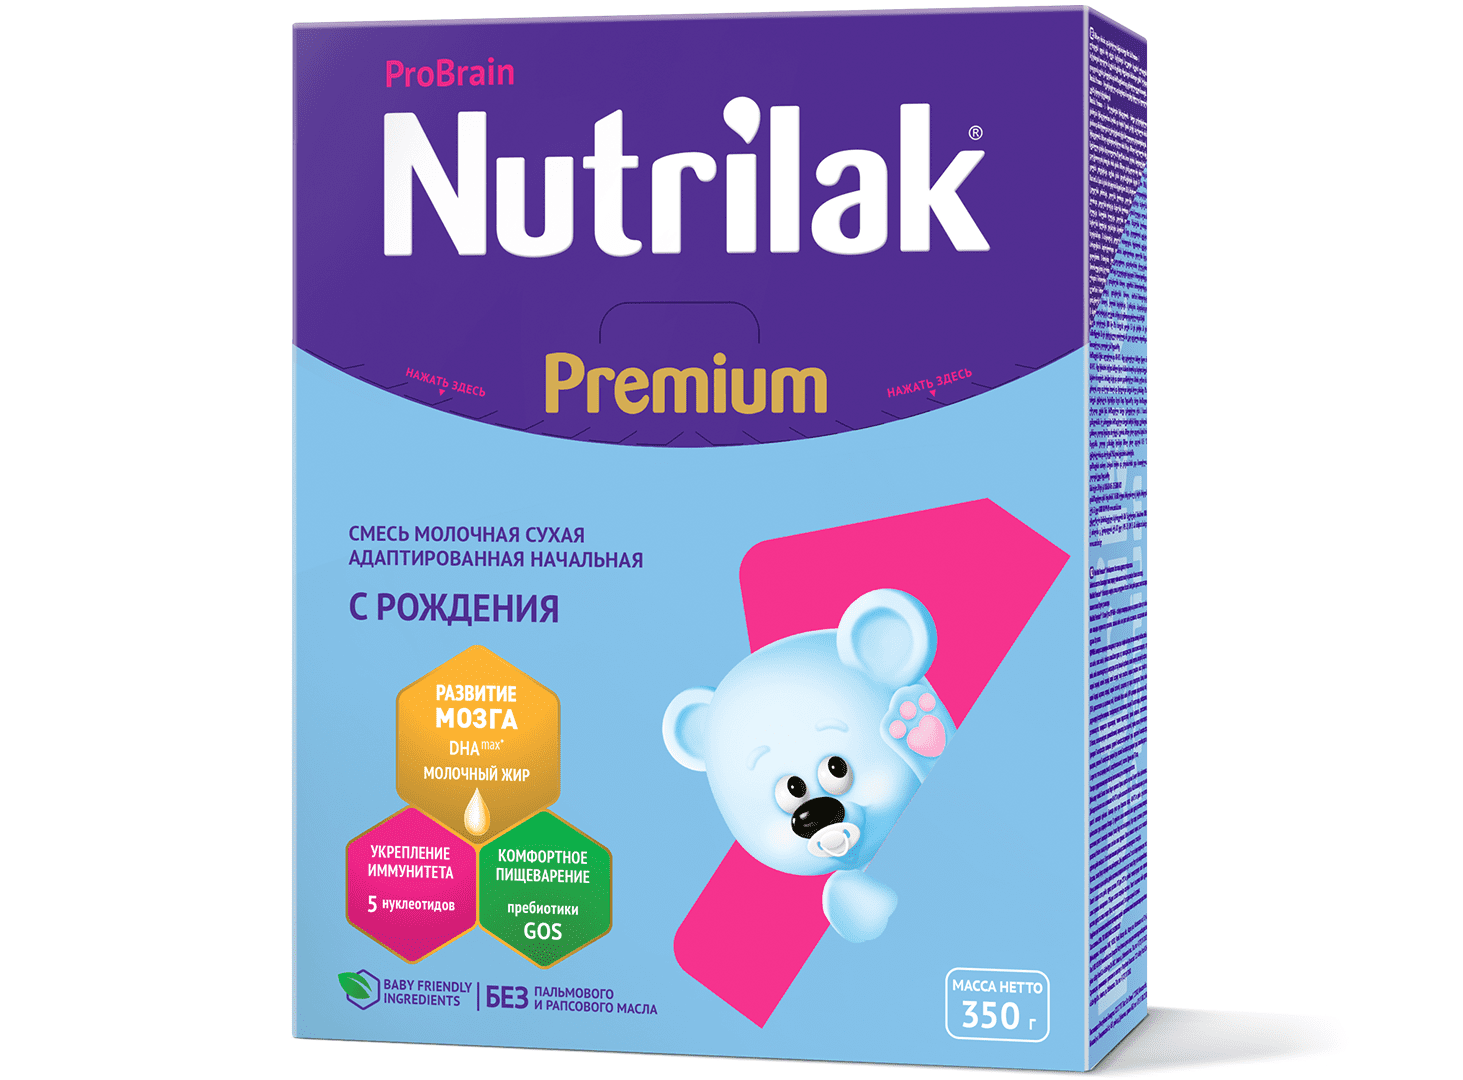 Nutrilak Premium 1 ნუტრილაკი პრემიუმი 1 (0  – 6 თვე) 0199